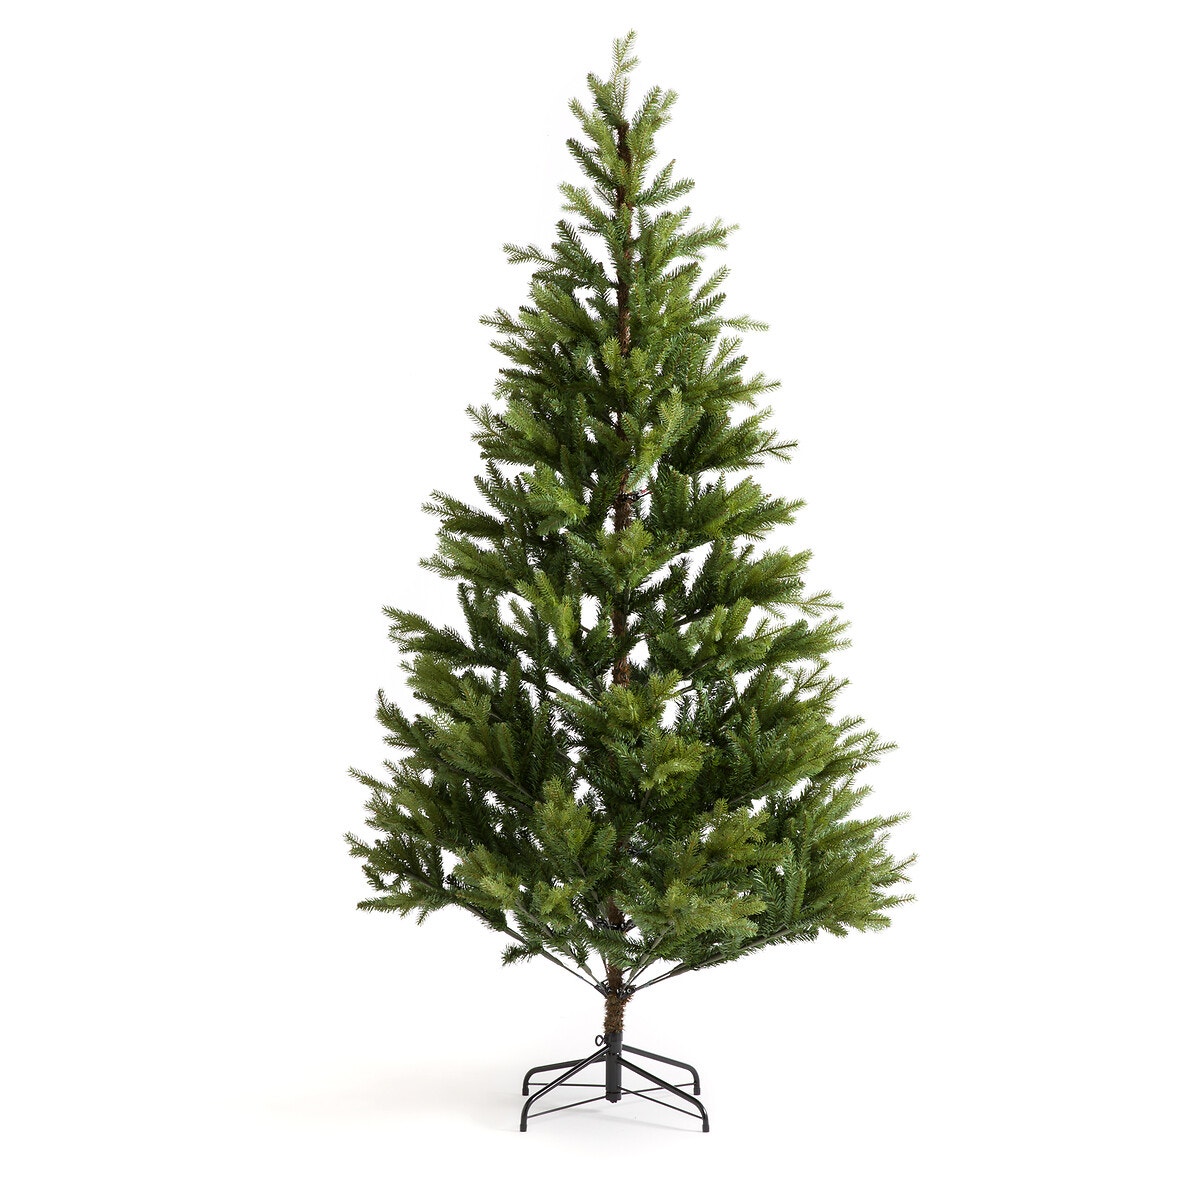 Σπίτι > Διακόσμηση > Διακοσμητικά αντικείμενα > Χριστουγεννιάτικη διακόσμηση > Χριστουγεννιάτικα δέντρα και βάσεις Τεχνητό έλατο Υ210 εκ.